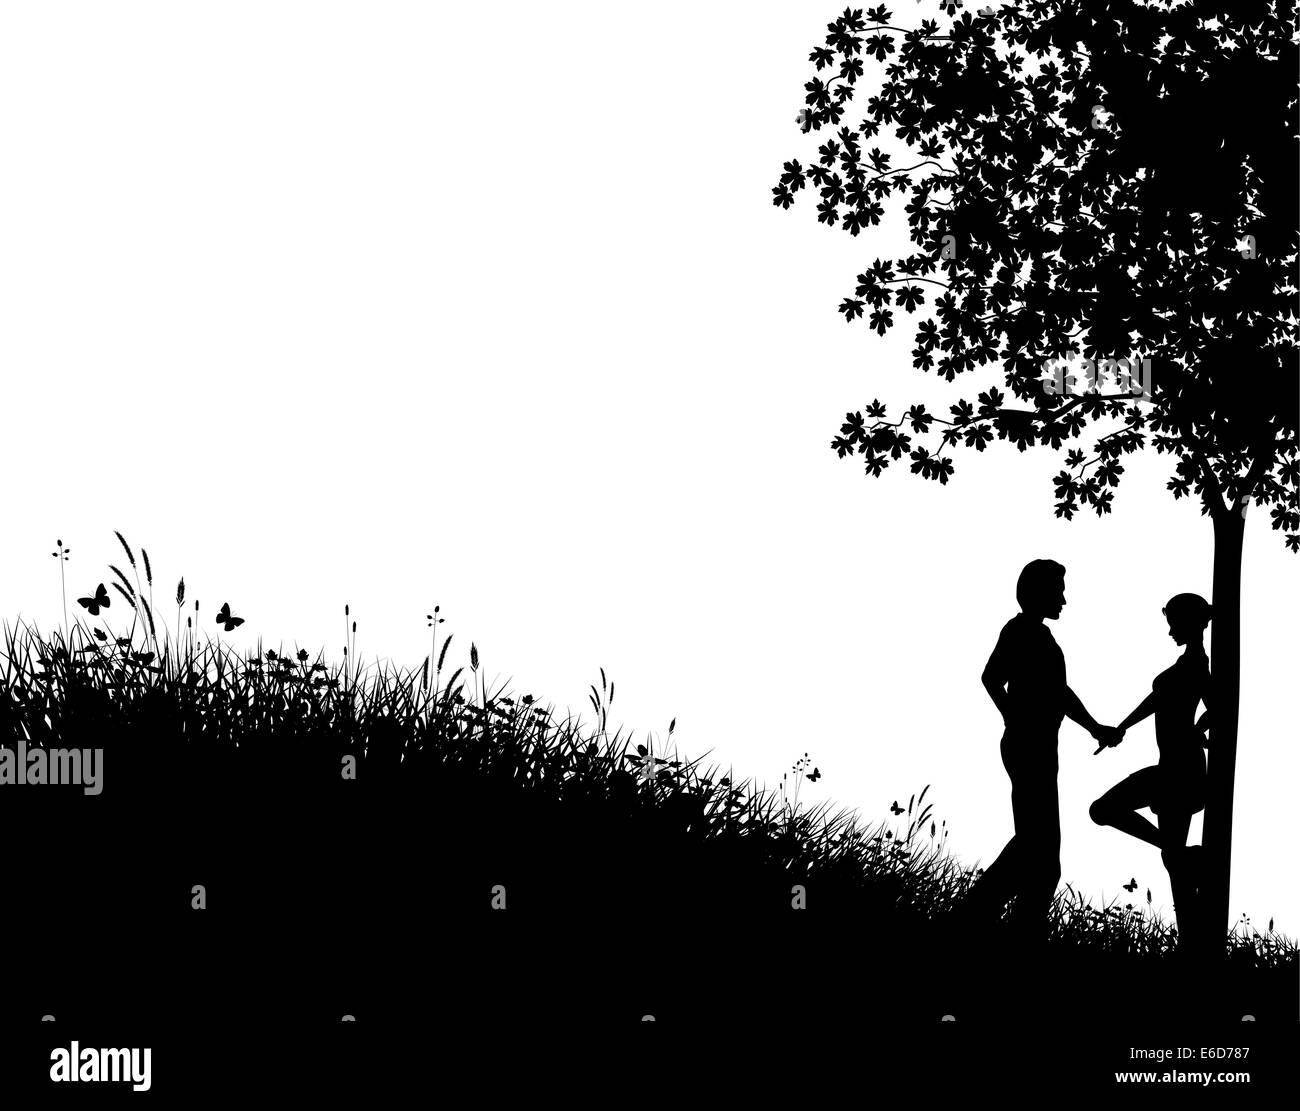 Silueta vectorial editable de una joven pareja en un terreno con césped, árboles y personas como elementos separados Ilustración del Vector